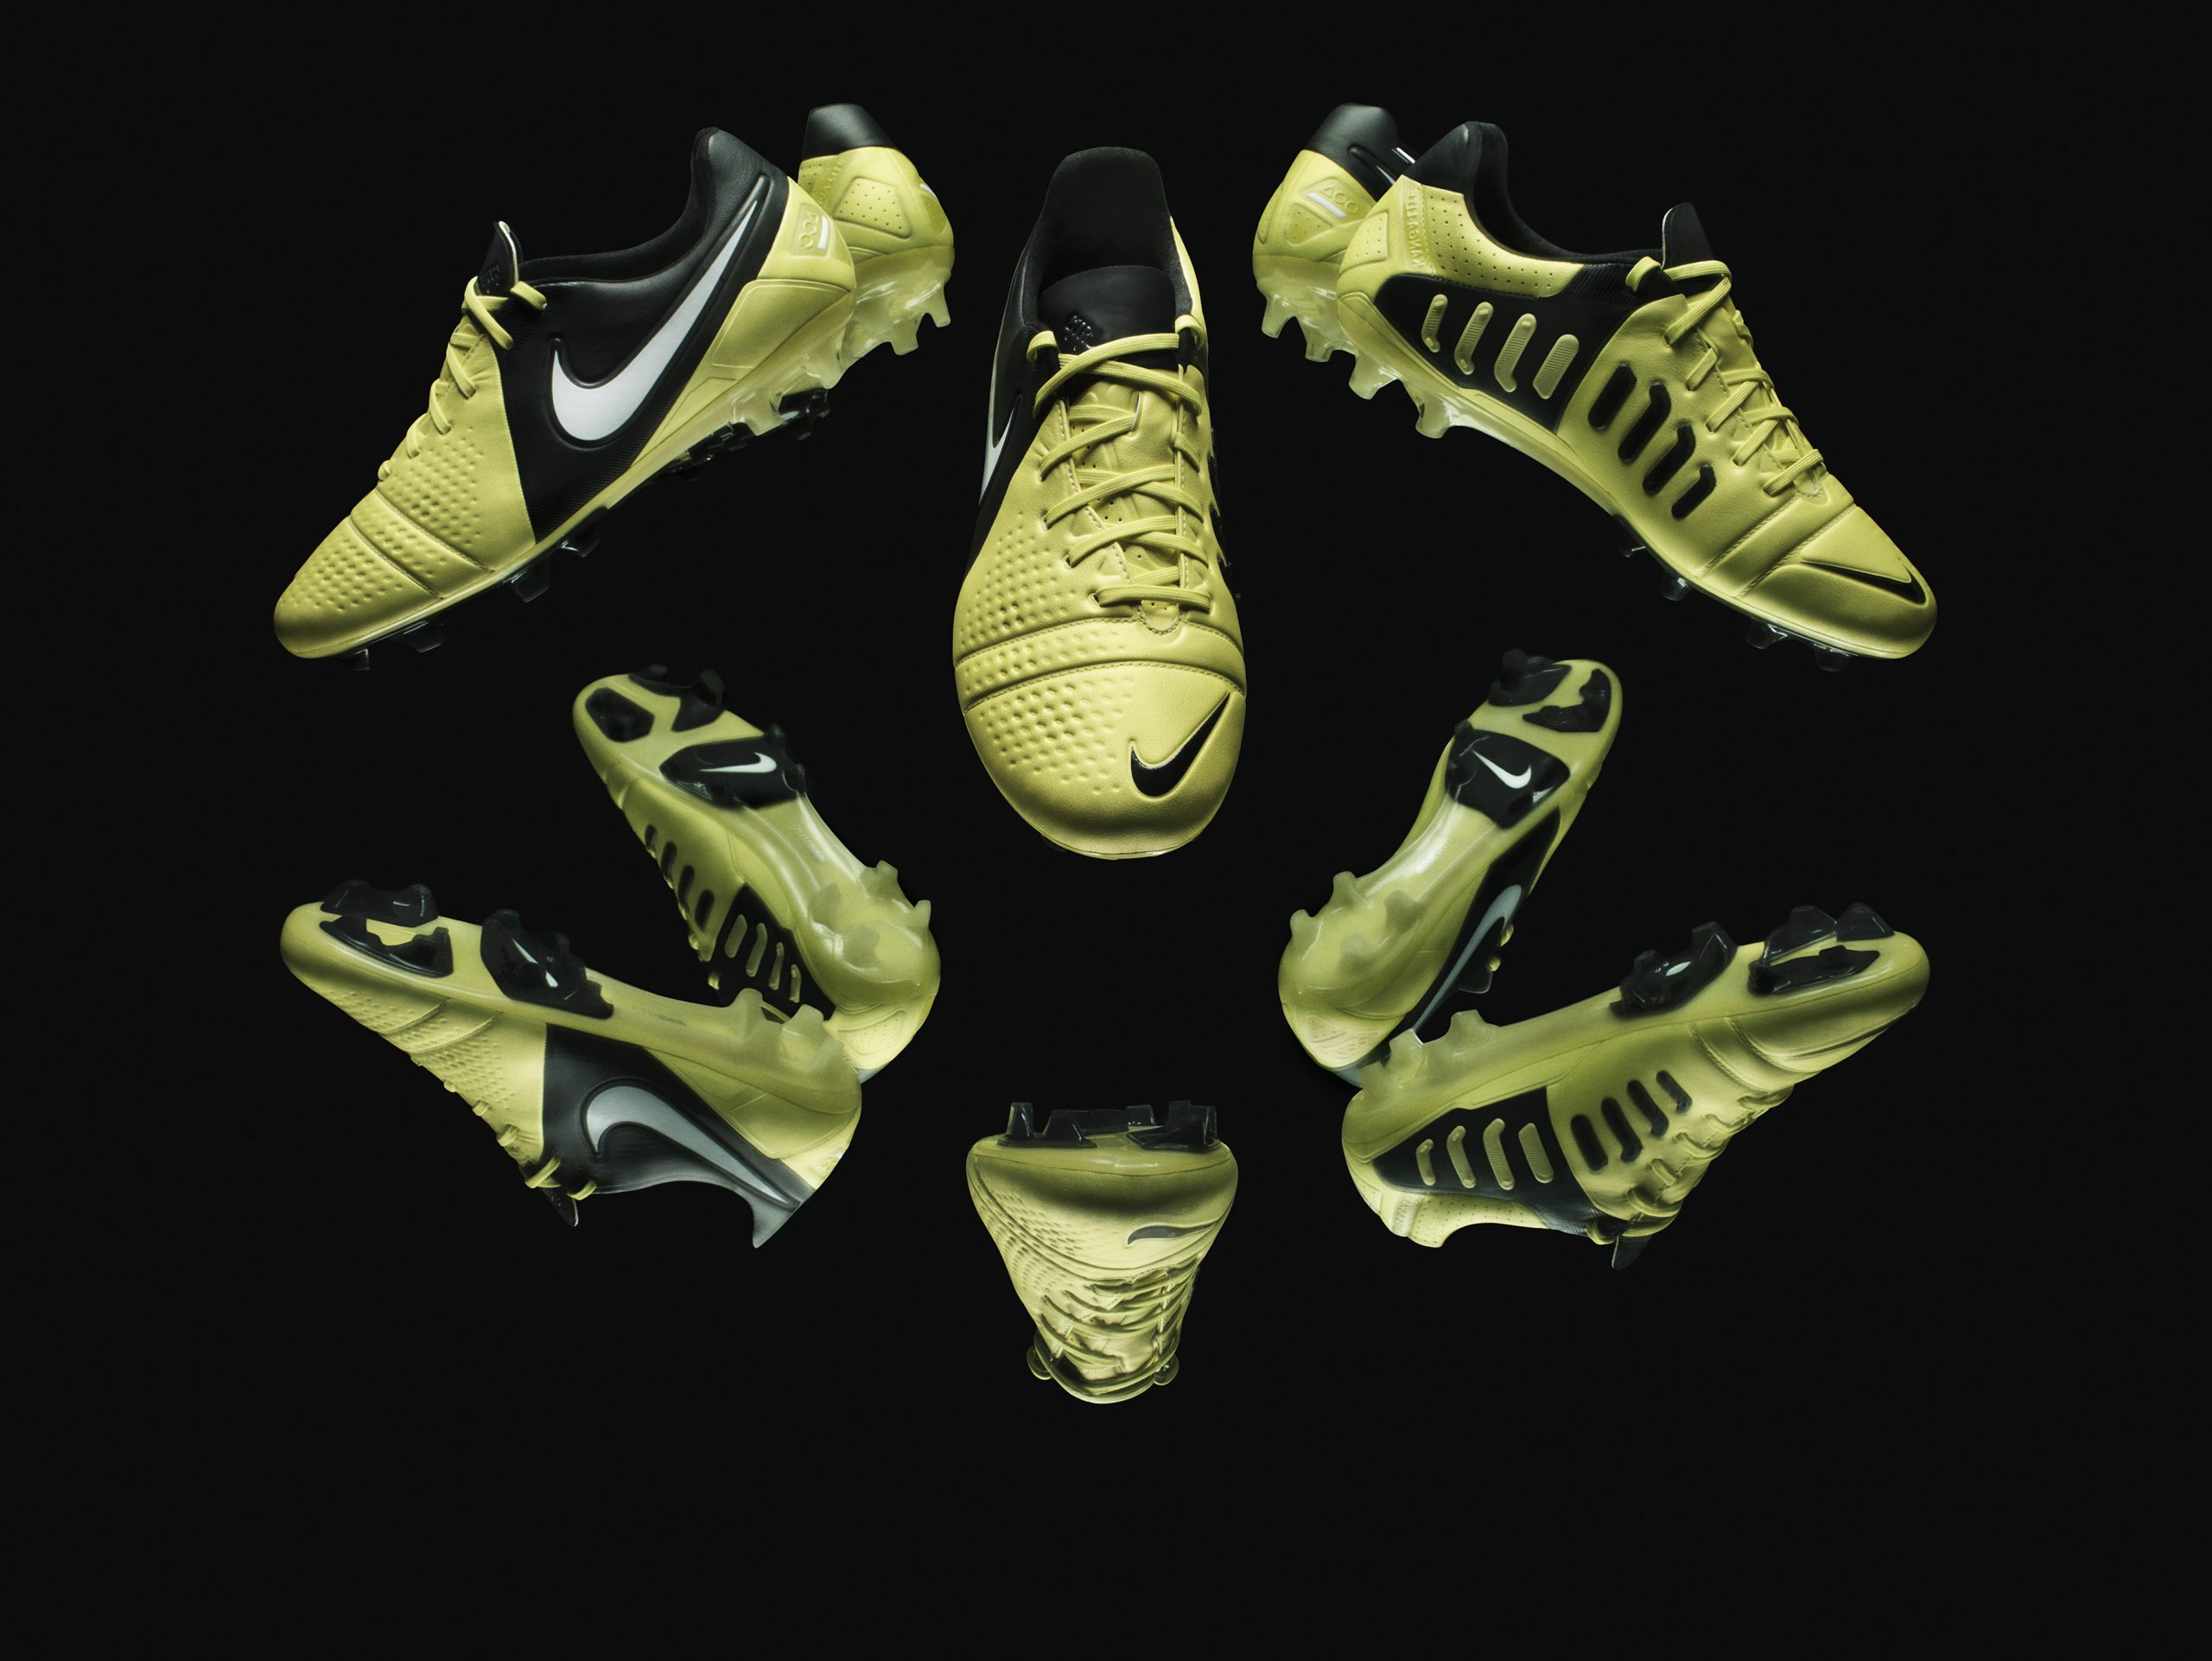 Nike Football launch the new CTR360 Maestri II Elite